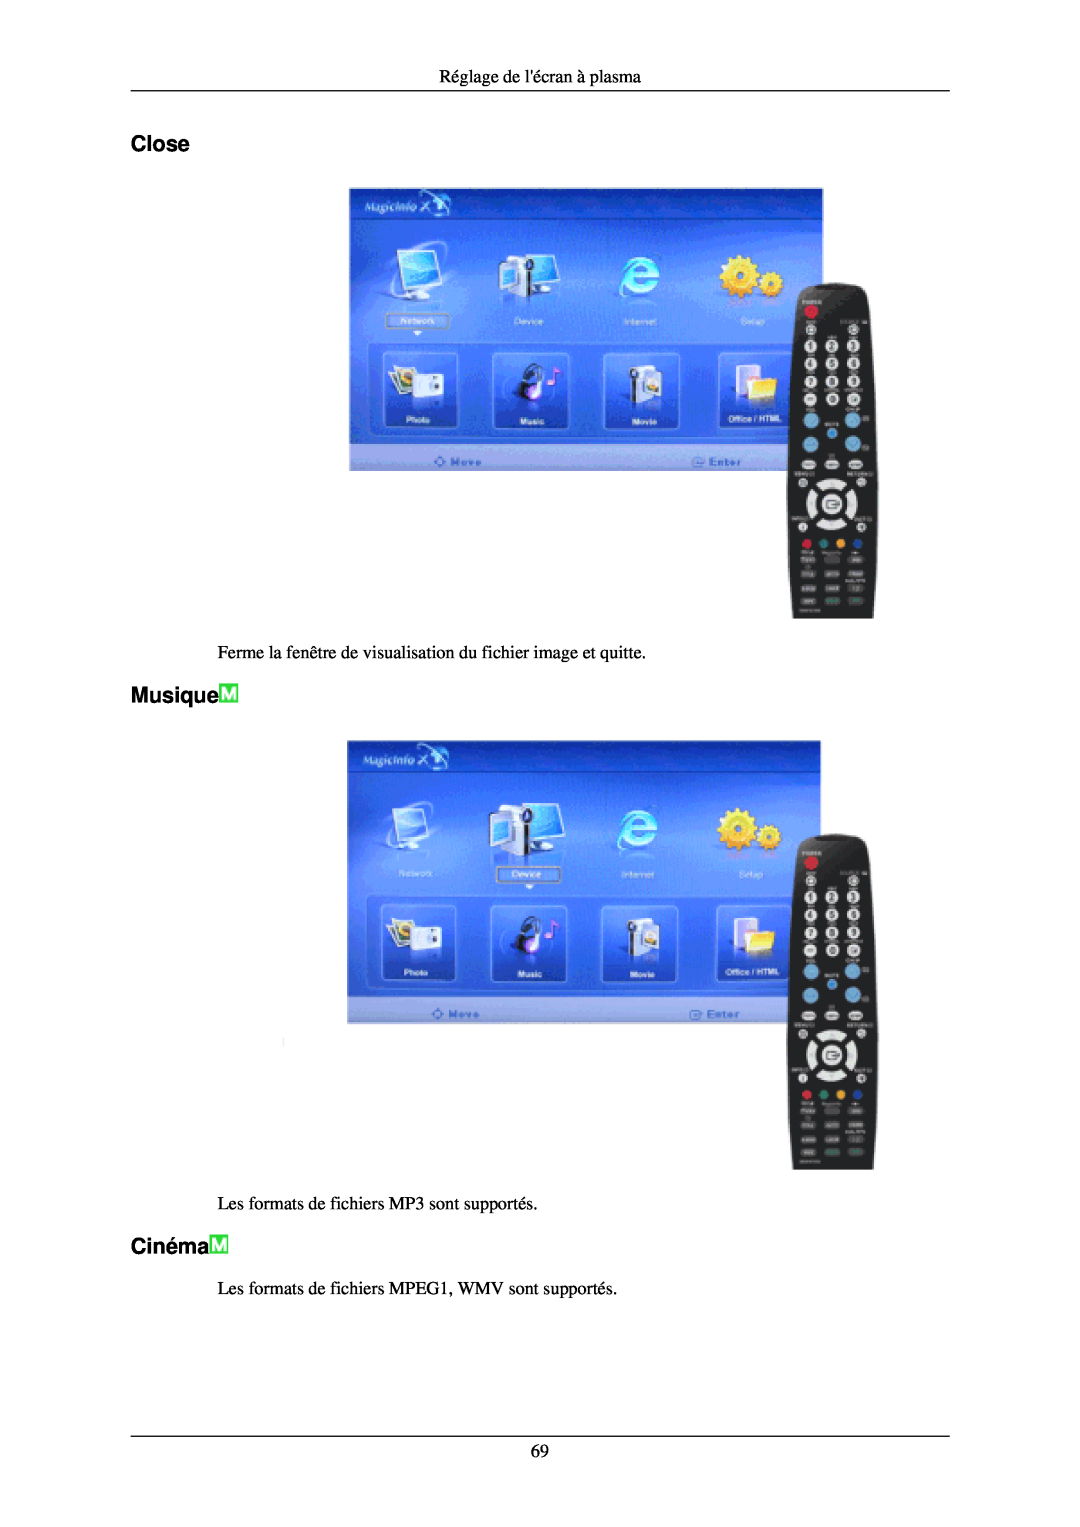 Samsung PH42KLPLBC/EN manual Close, Musique, Cinéma, Réglage de lécran à plasma, Les formats de fichiers MP3 sont supportés 